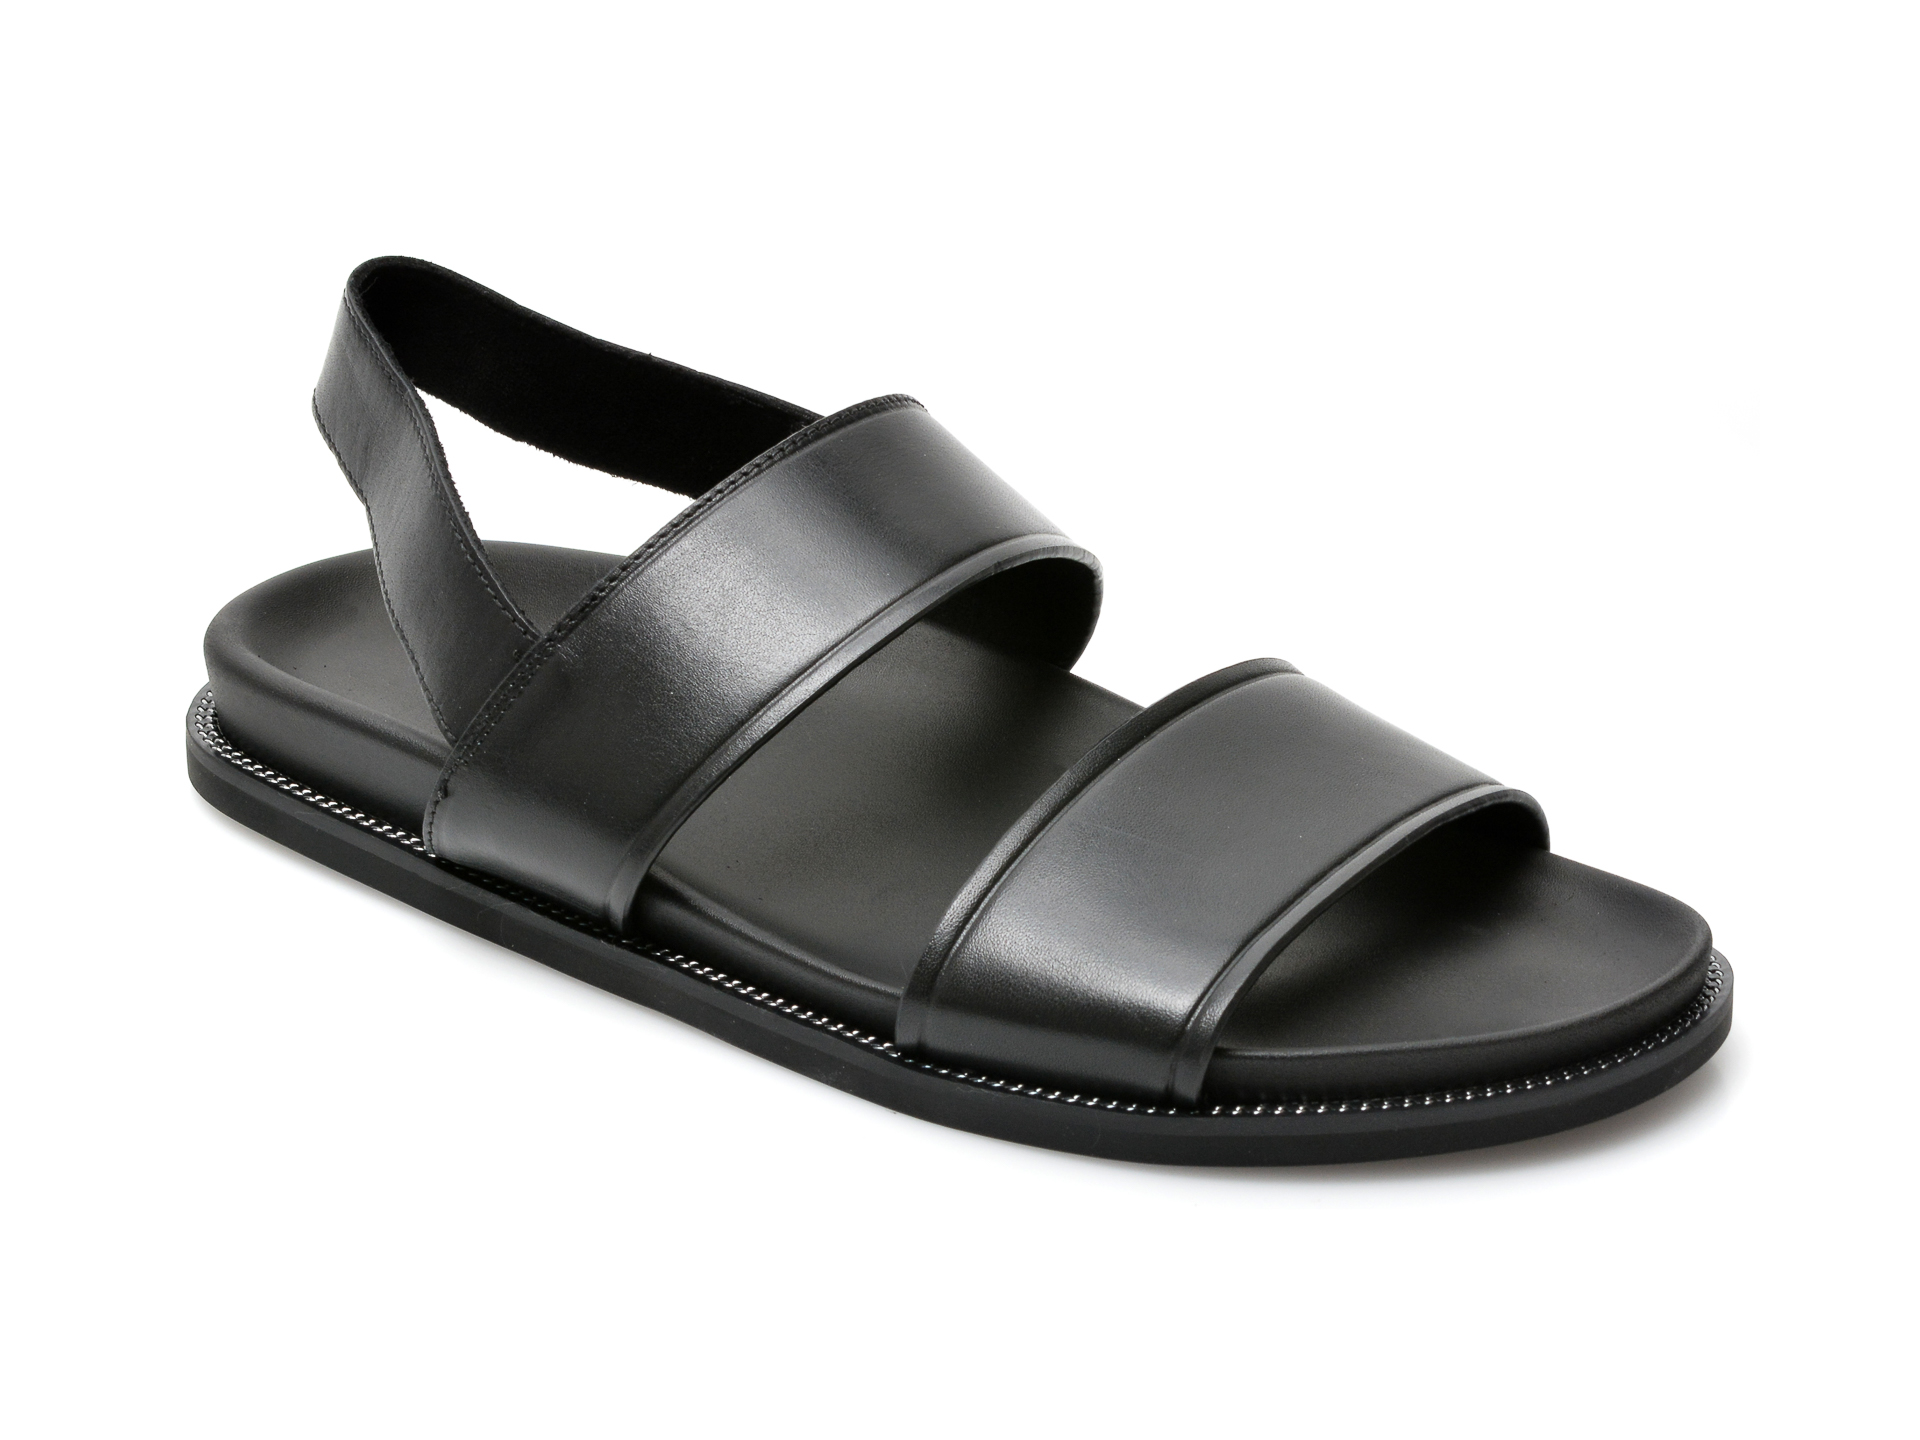 Sandale ALDO negre, Nurray004, din piele naturala Aldo